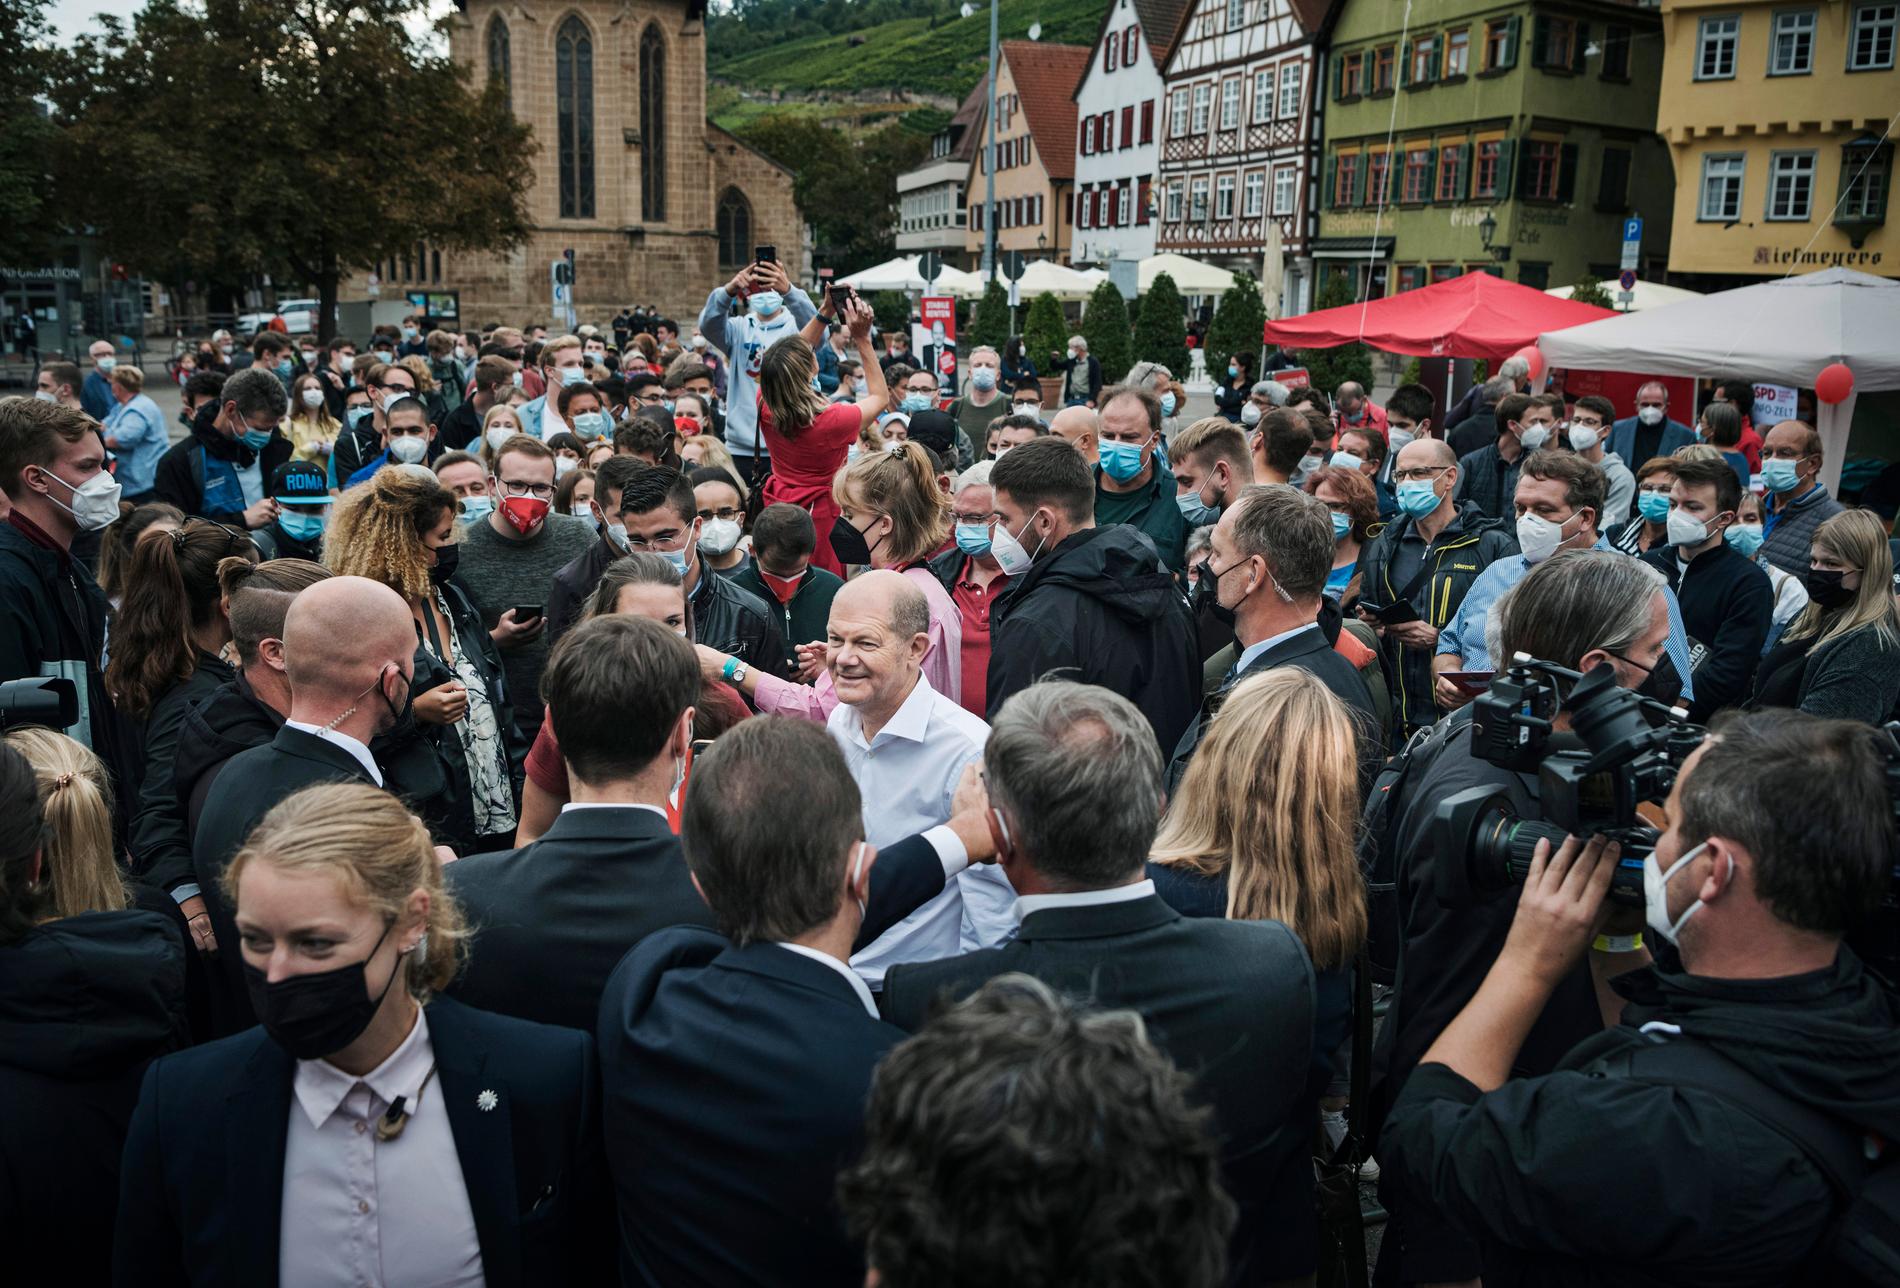 För ett år sedan var Olaf Scholz ratad som partiledare och SPD låg på 15 procent. Nu får partiet 25,7 procent av rösterna i valet och blir därmed störst. Efter drygt två månader av tuffa koalitionsförhandlingar, väljs Olaf Scholz den 8 december till Tysklands nya förbundskansler.